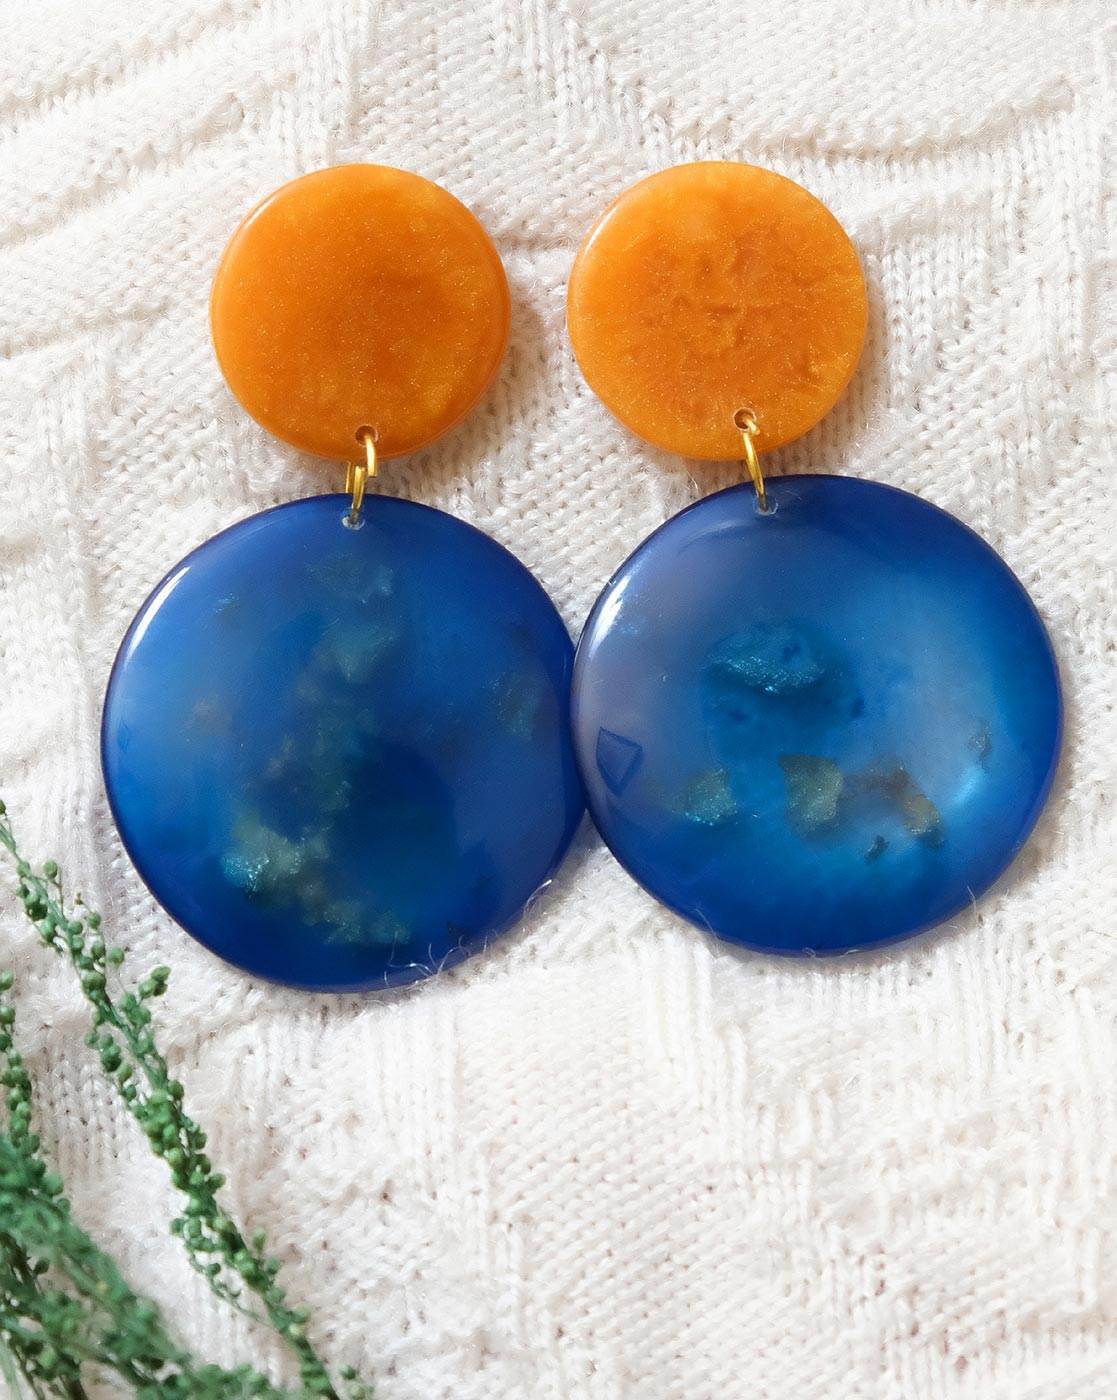 Buy Orange  Blue Earrings for Women by Anuka Jewels Online  Ajiocom